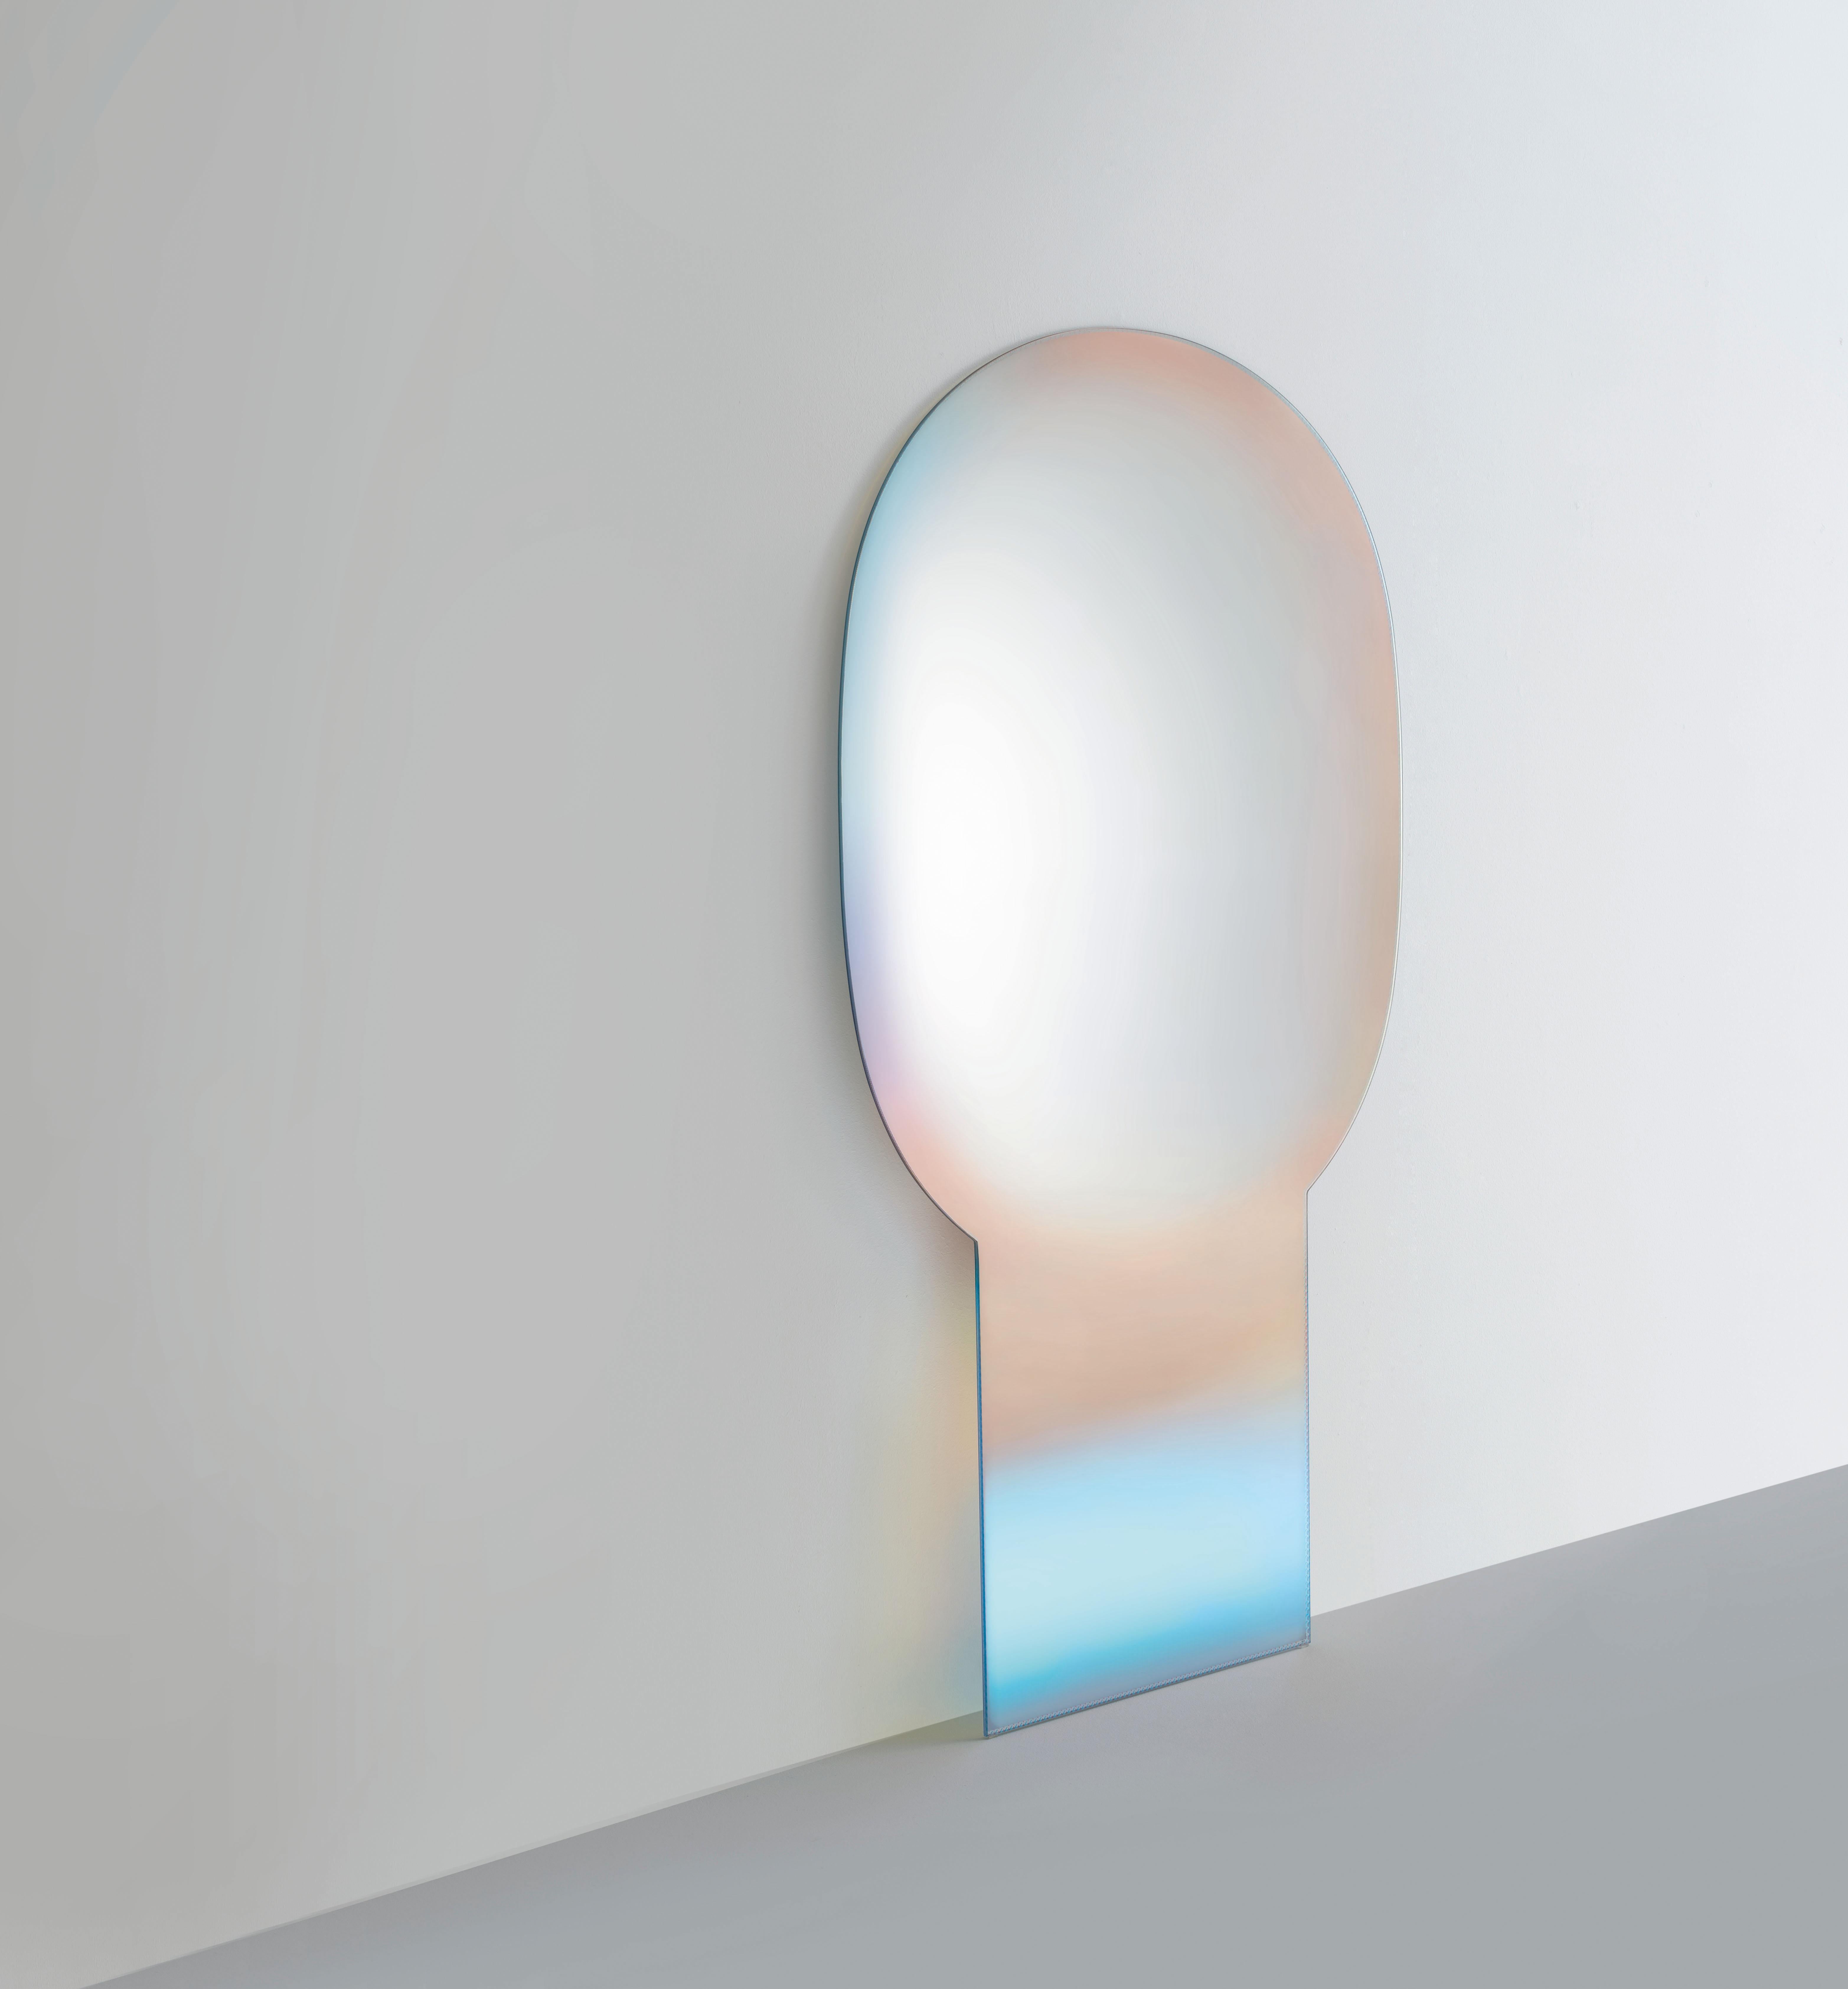 Le miroir Shimmer Specchi est présenté ici dans le verre extra clair. Une série de miroirs en verre extra clair. Réalisé avec des techniques de traitement raffinées, un mélange d'argenture dégradée et la magnifique finition multichromatique irisée,